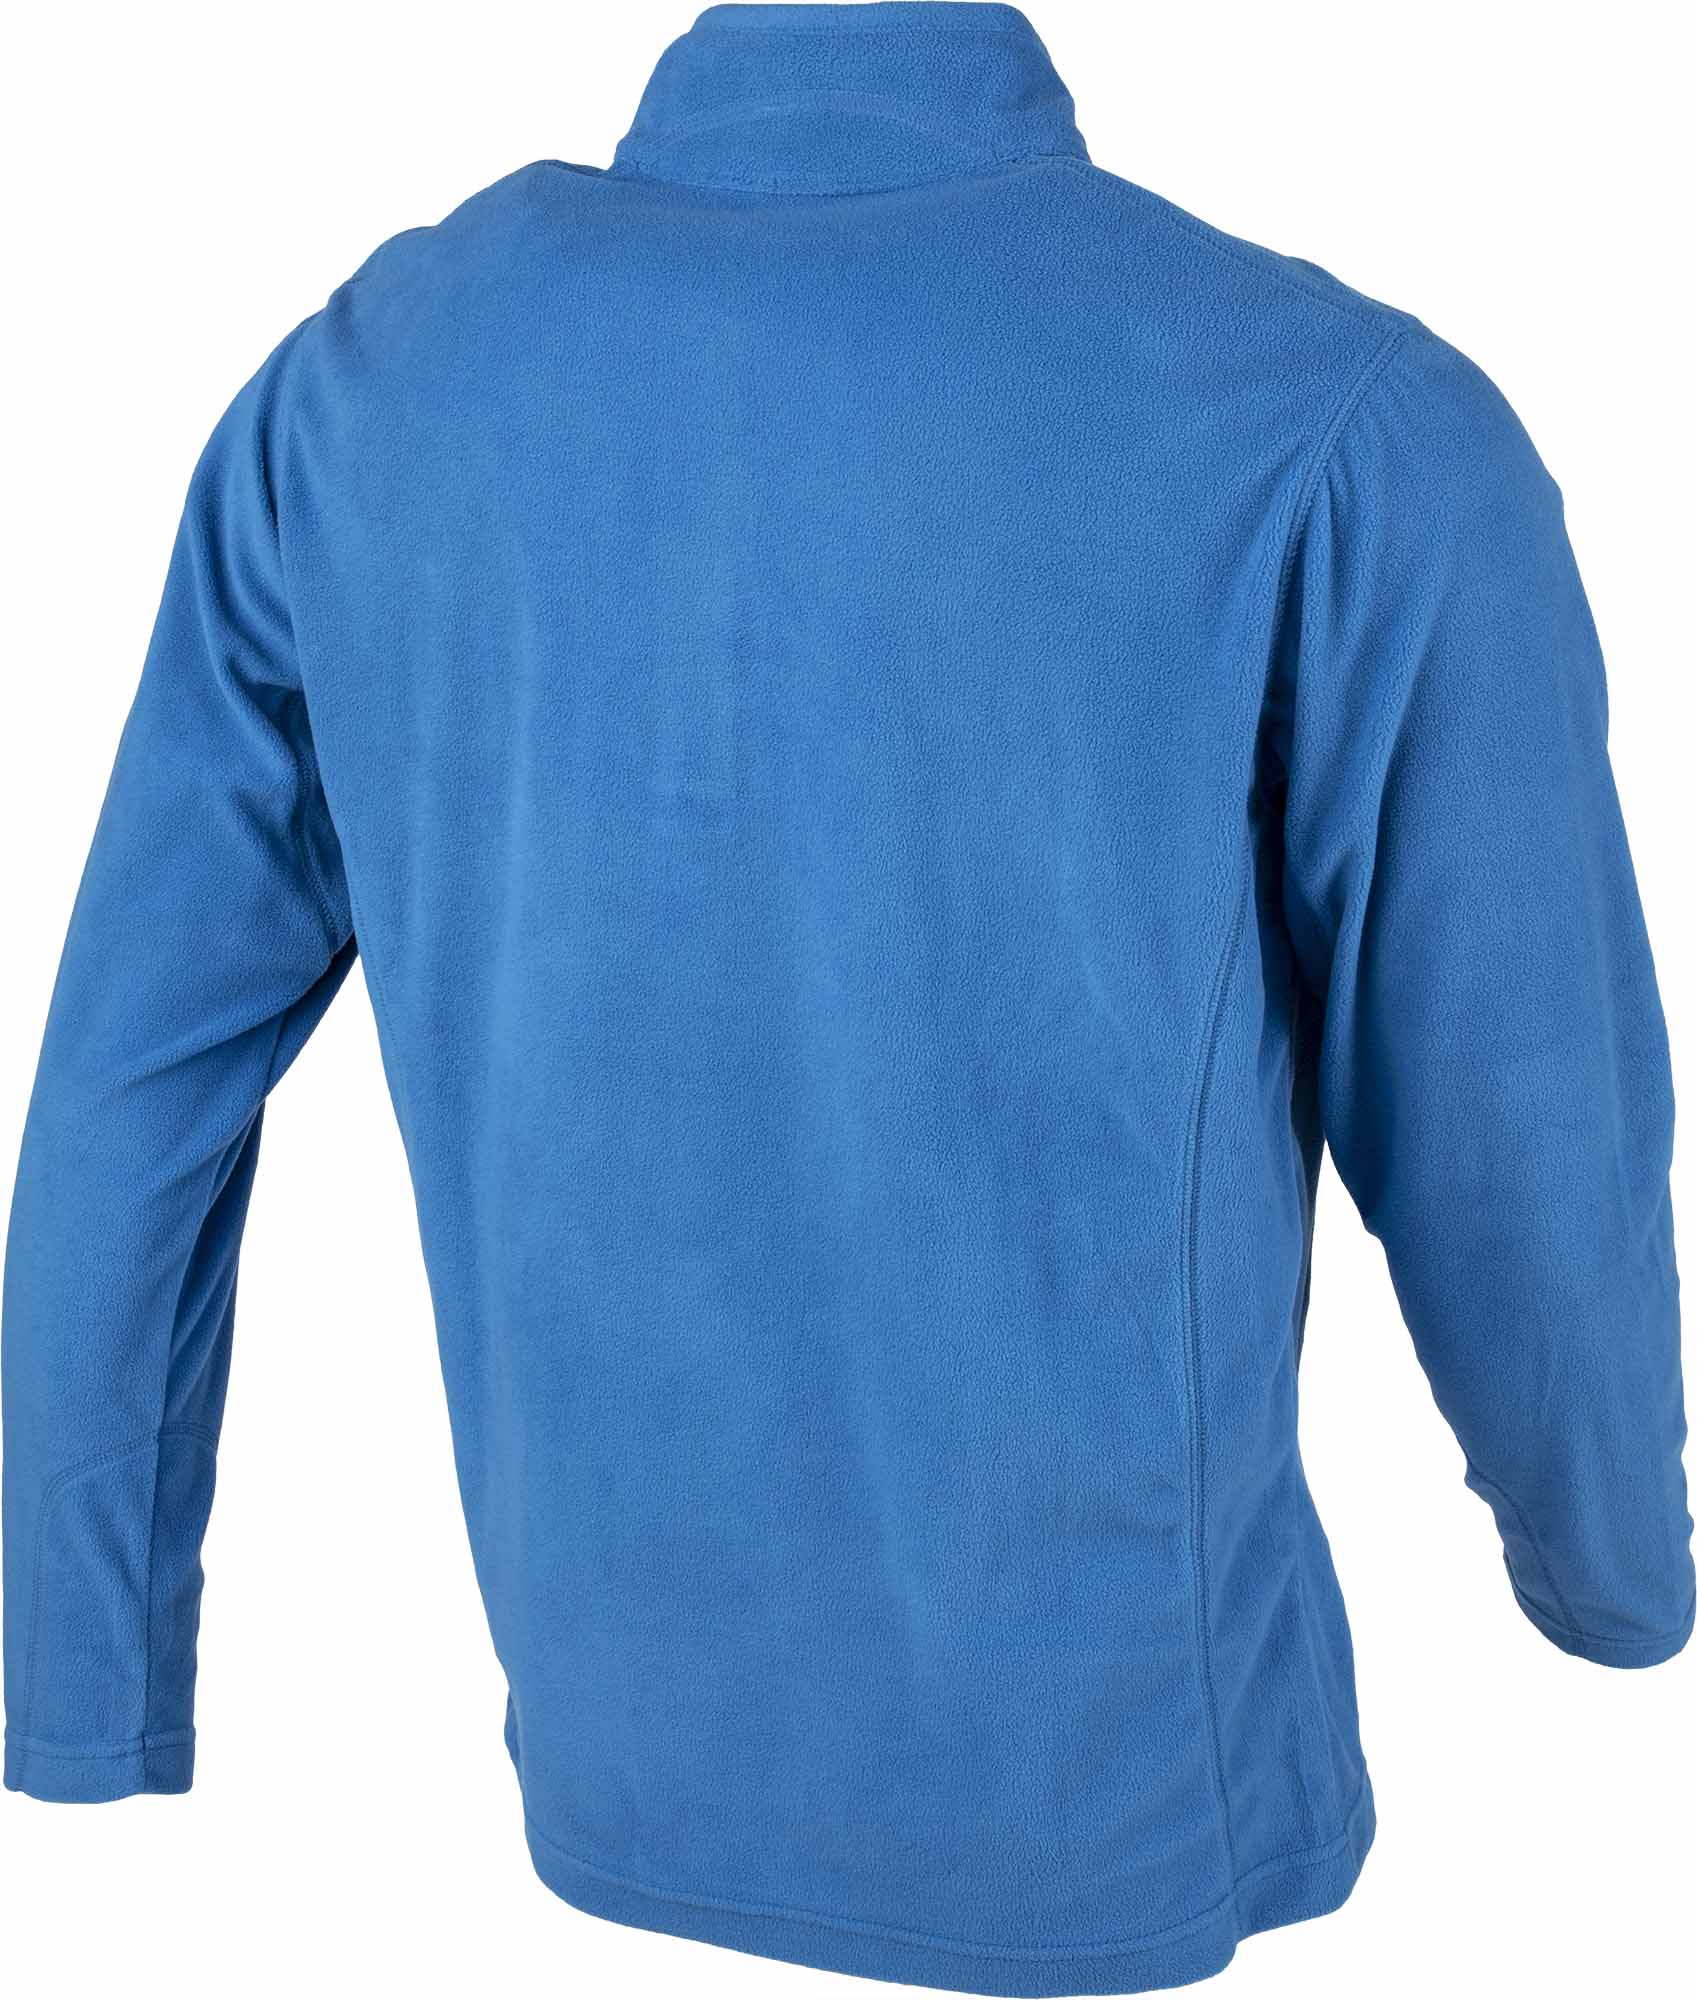 Men's outdoor sweatshirt